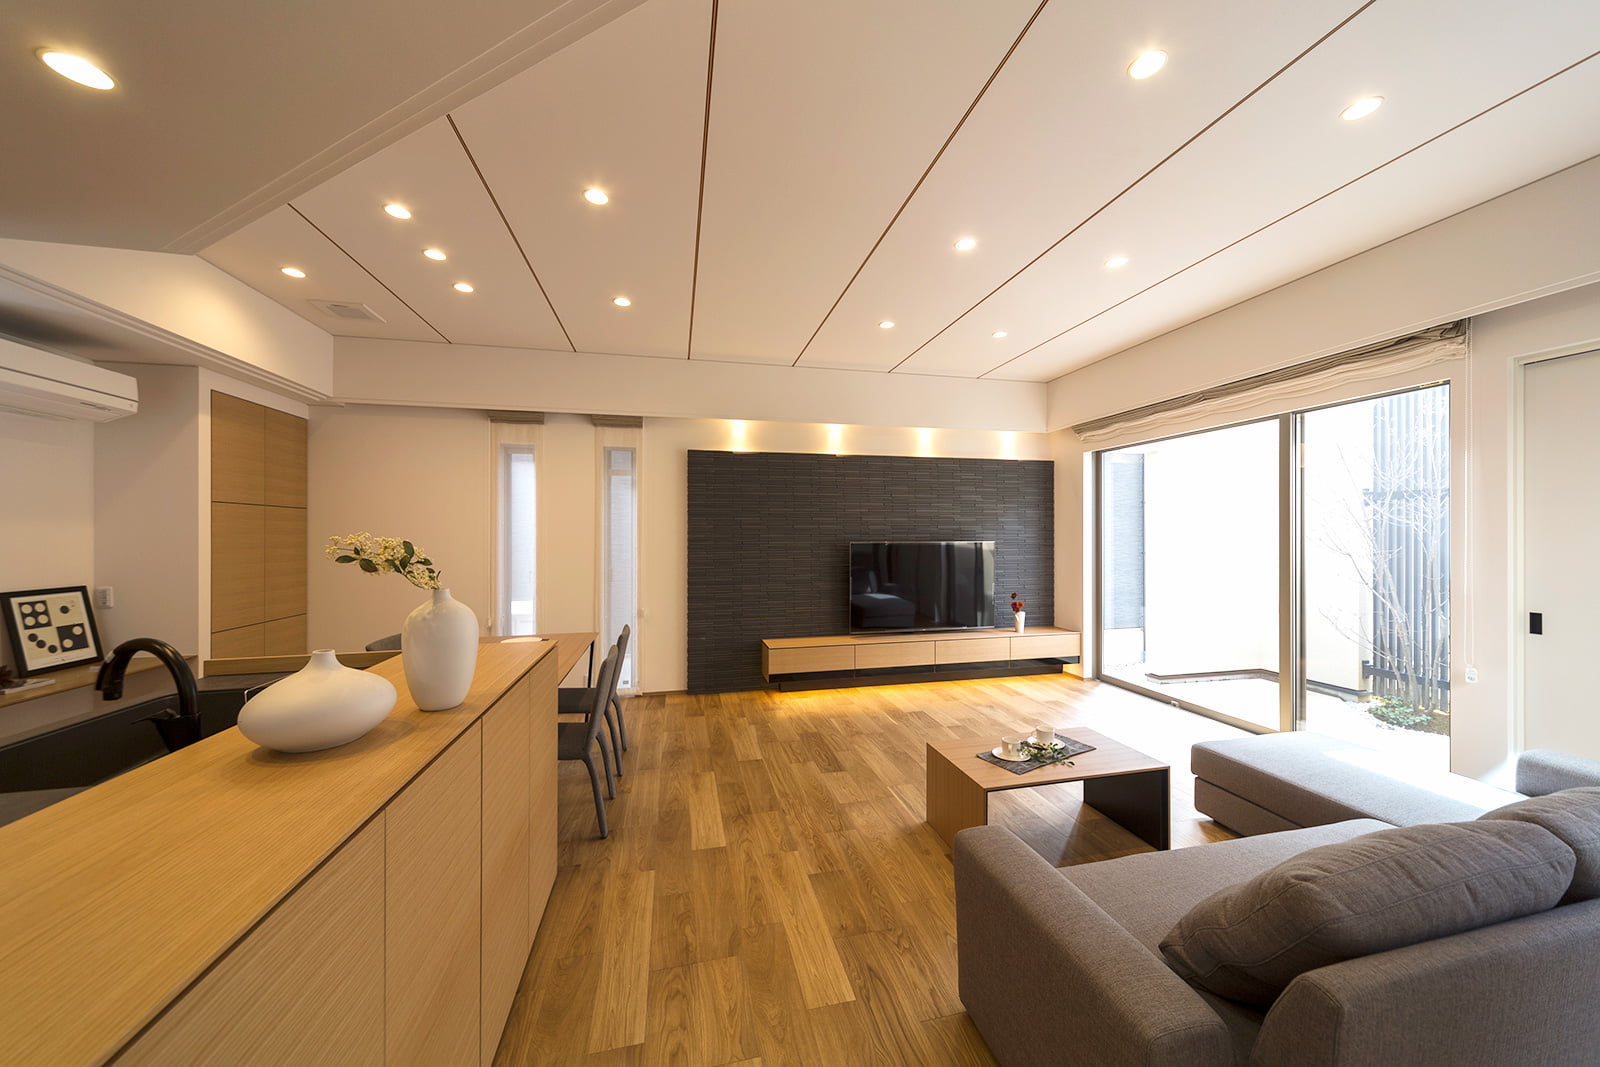 素材と質感、機能と空間を贅沢に両立させた二世帯住宅